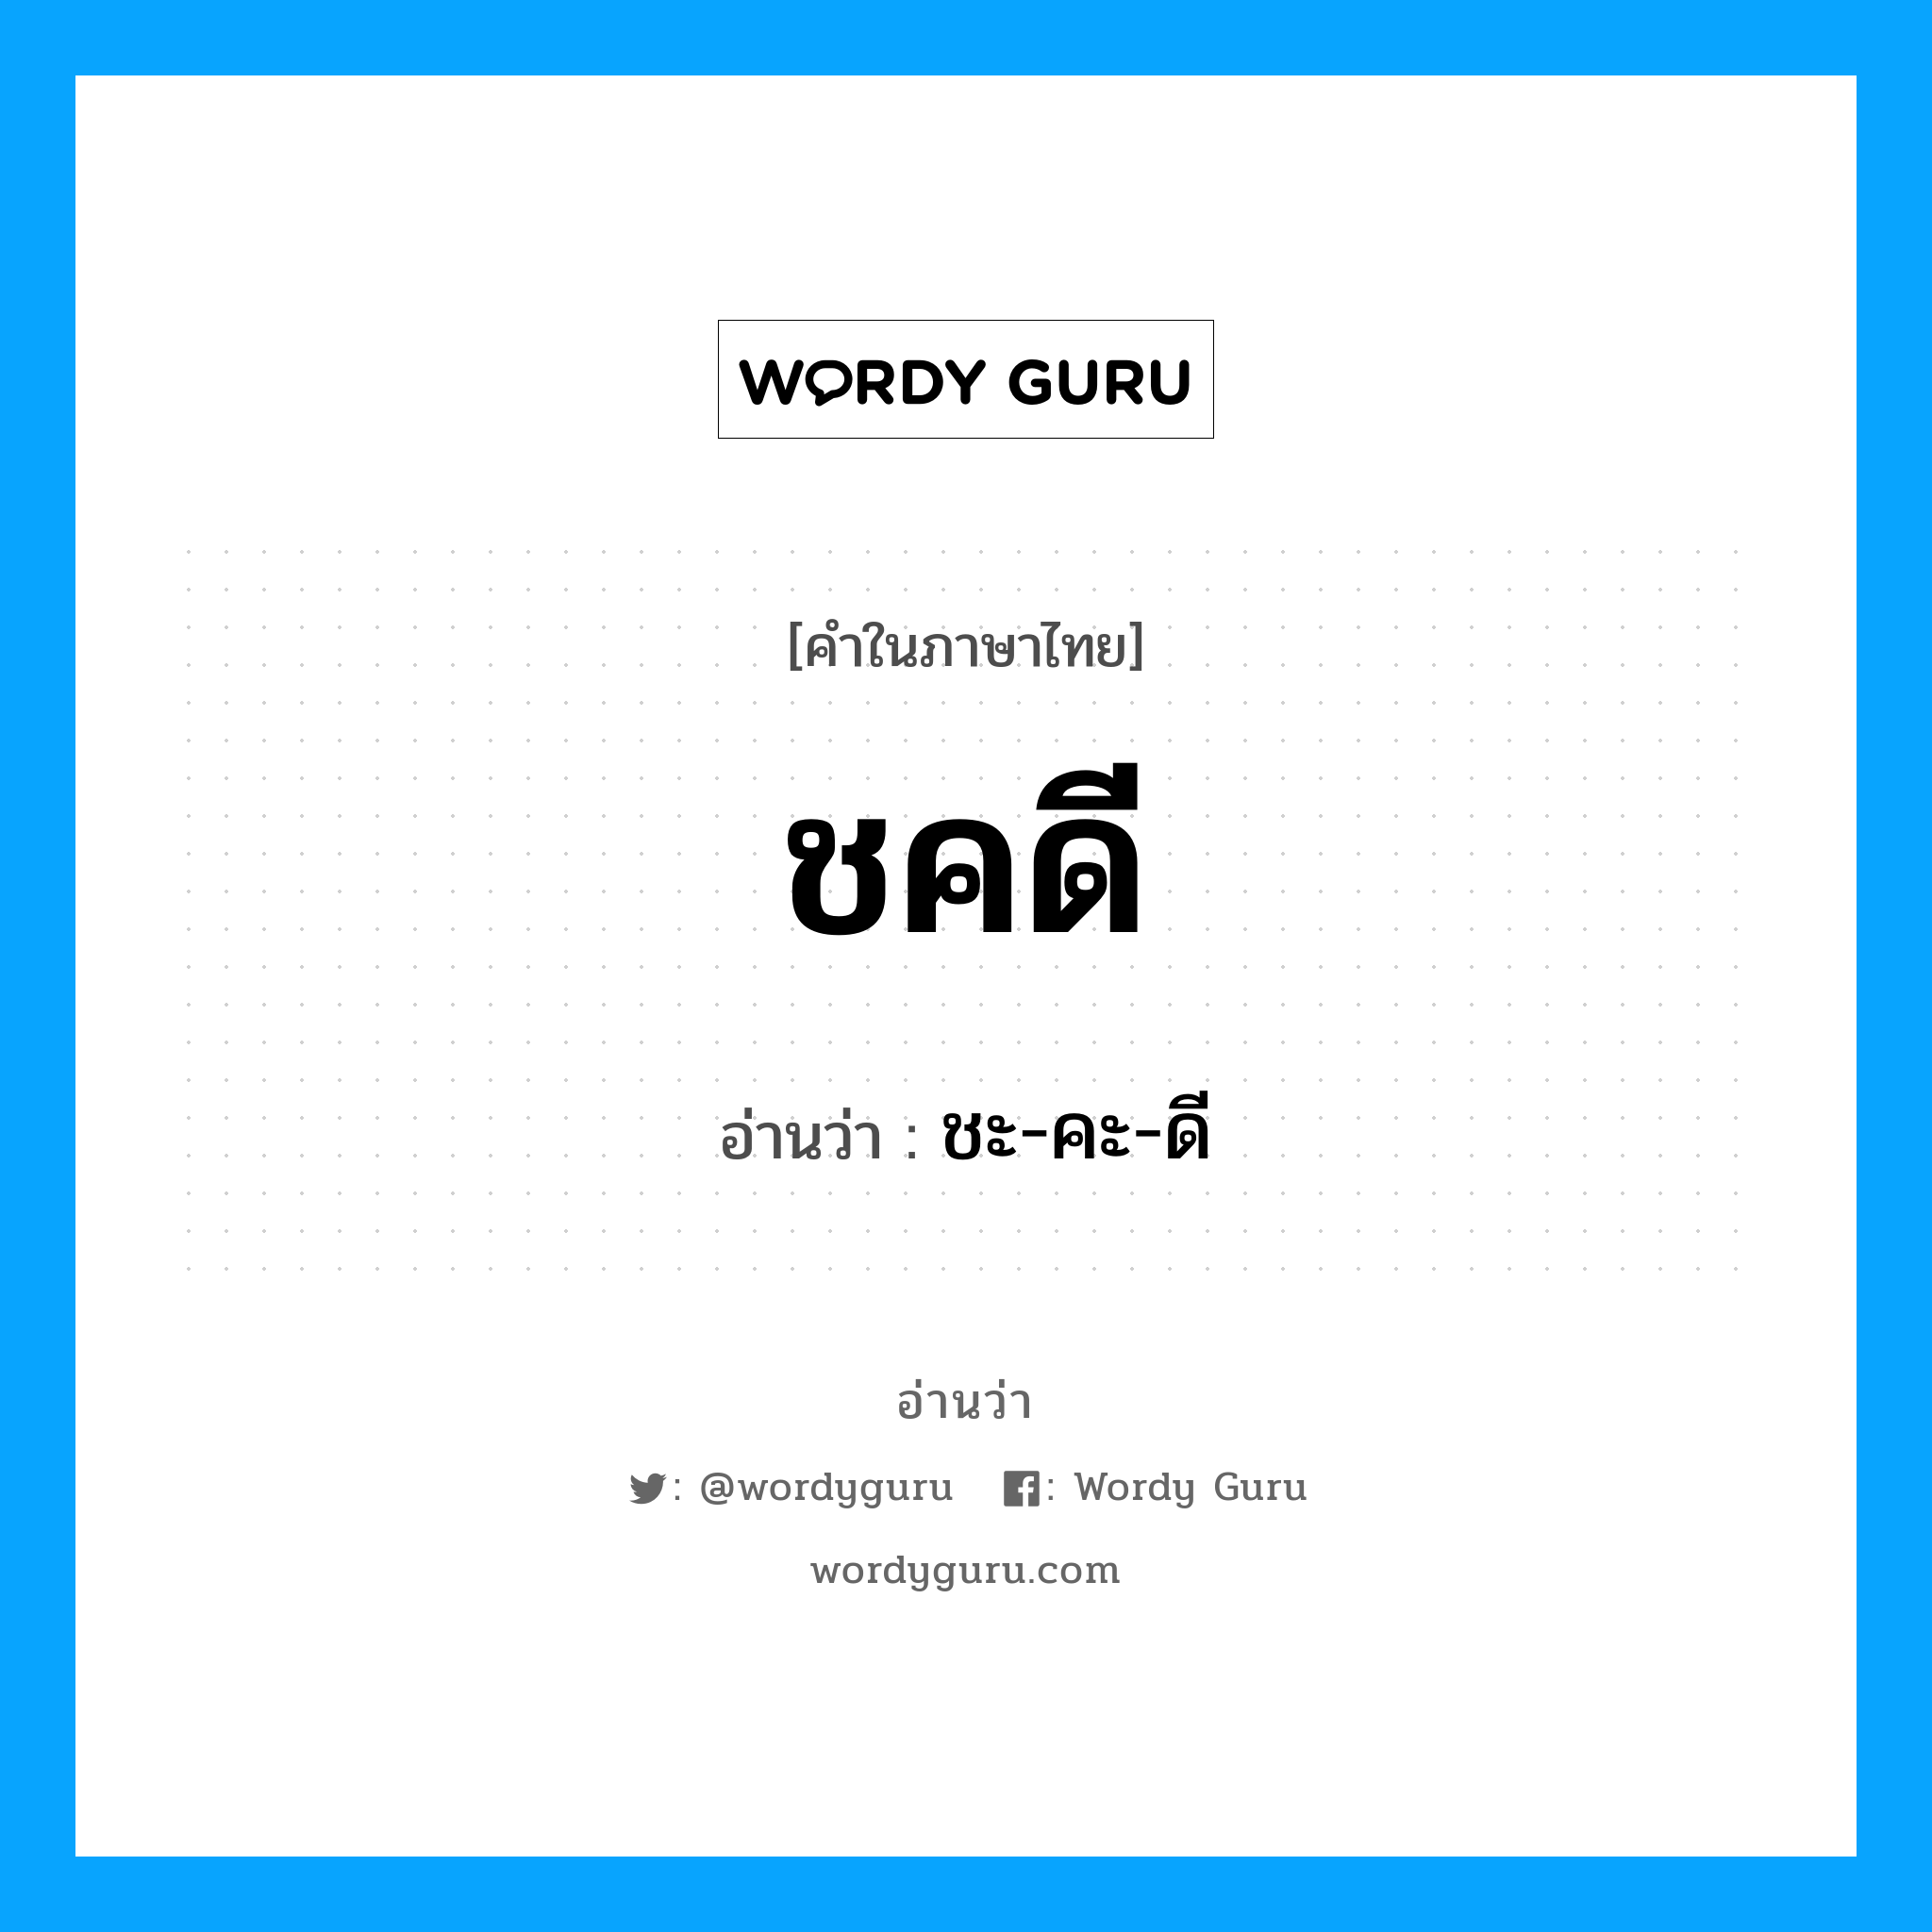 ชะ-คะ-ดี เป็นคำอ่านของคำไหน?, คำในภาษาไทย ชะ-คะ-ดี อ่านว่า ชคดี